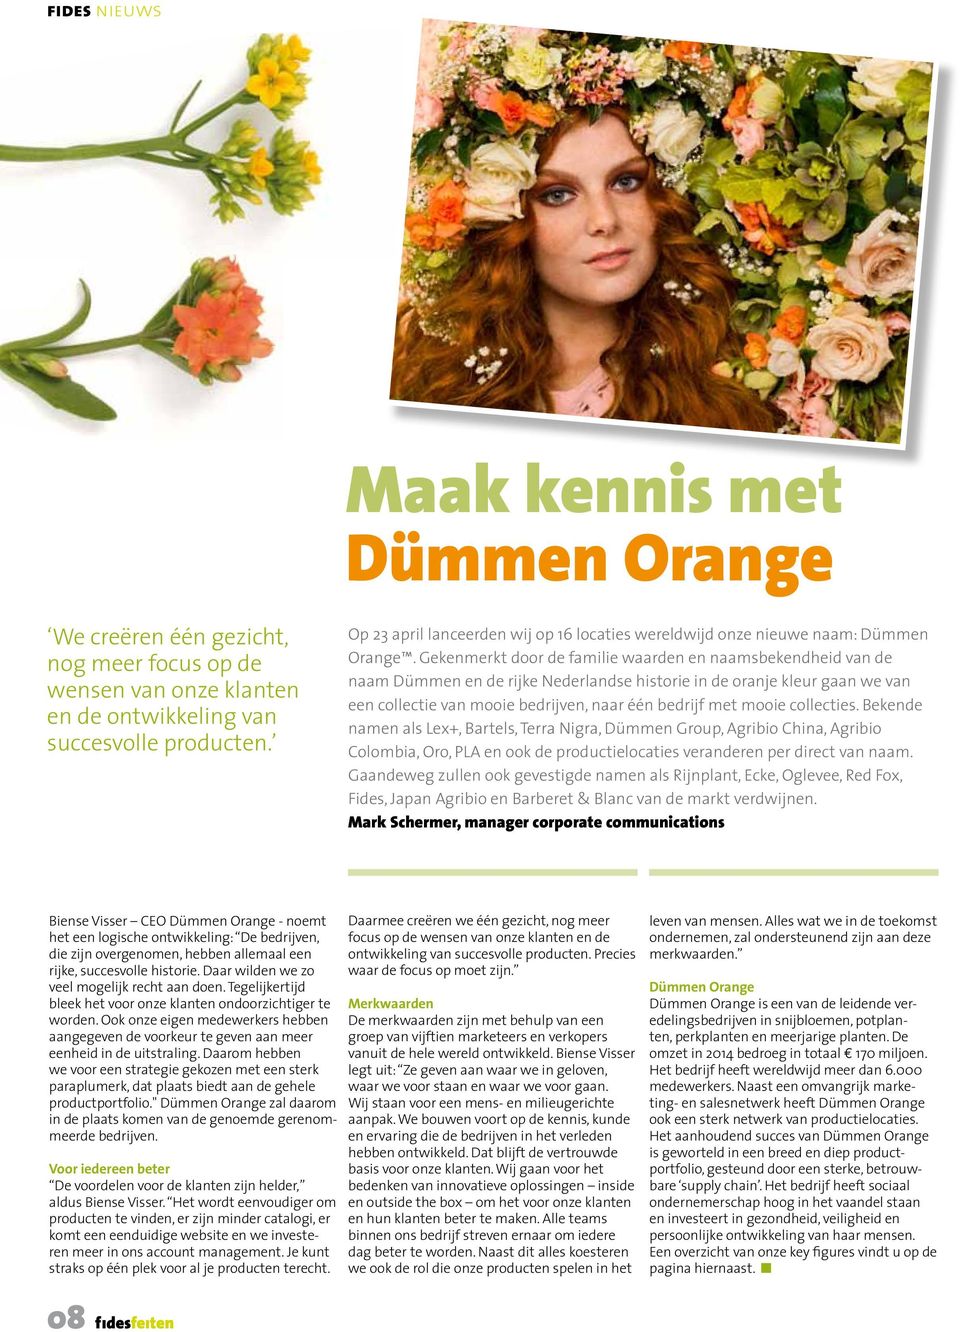 Gekenmerkt door de familie waarden en naamsbekendheid van de naam Dümmen en de rijke Nederlandse historie in de oranje kleur gaan we van een collectie van mooie bedrijven, naar één bedrijf met mooie